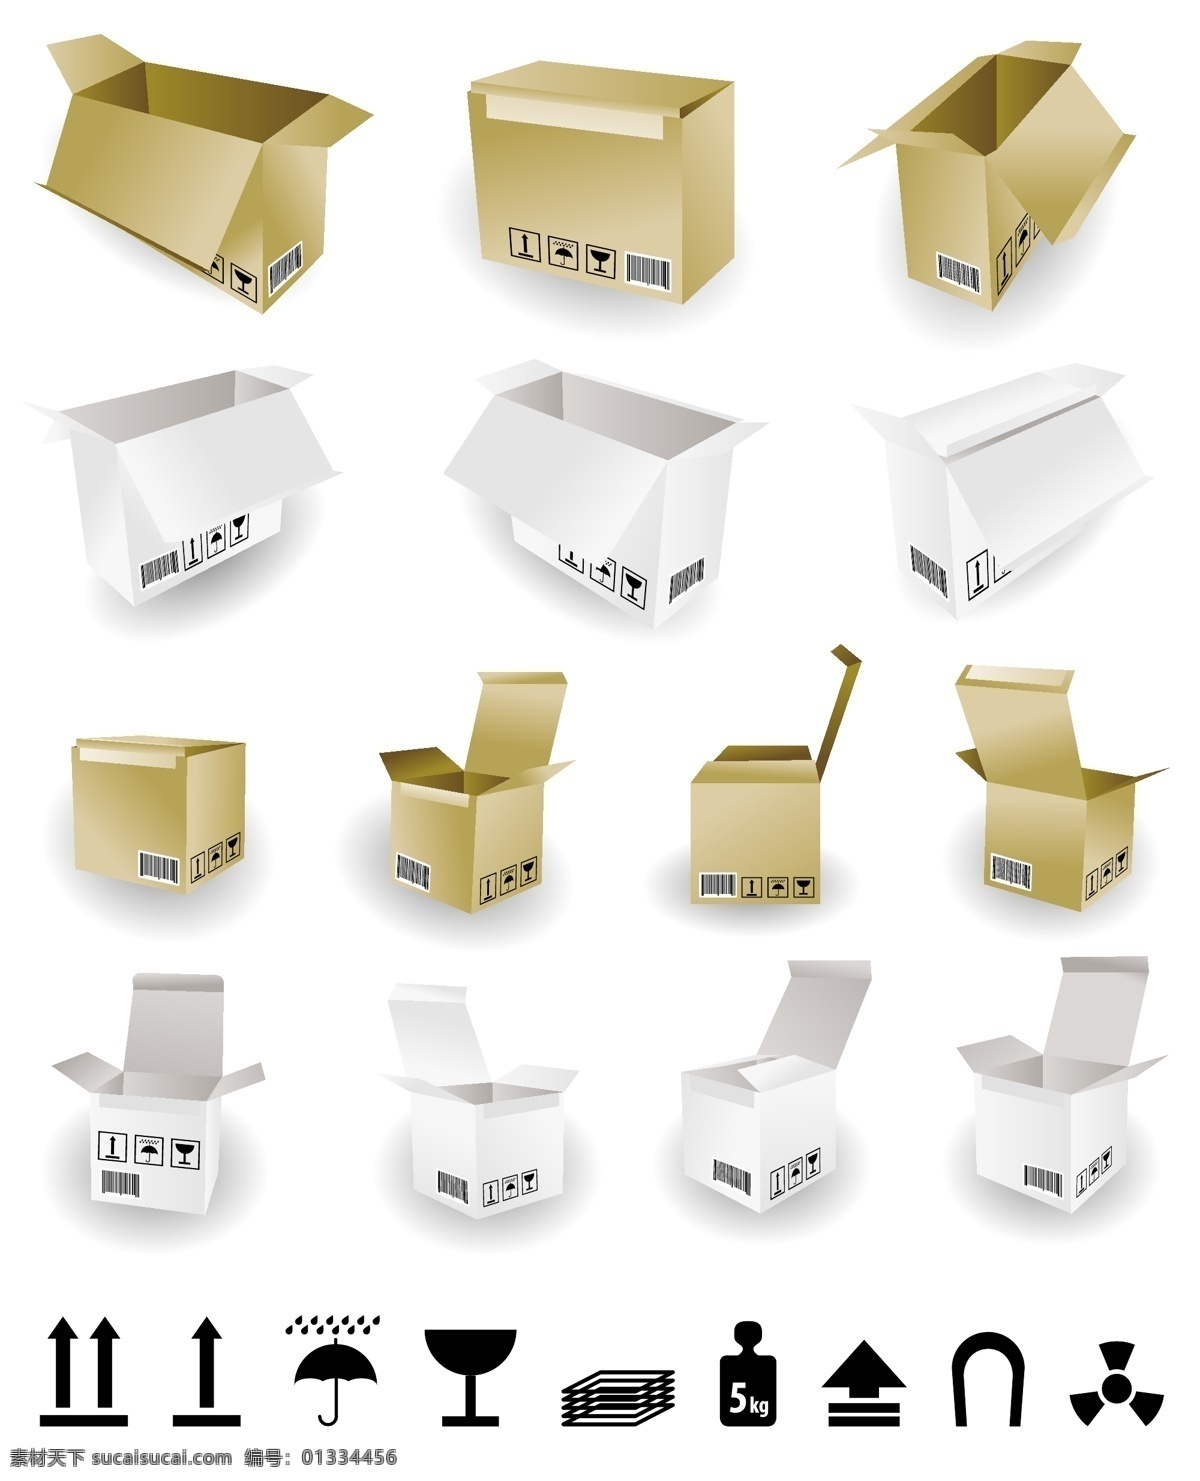 纸箱 运输 标识 eps格式 包装箱 标志 打开 模板 矢量素材 箱子 纸盒 矢量 矢量图 其他矢量图